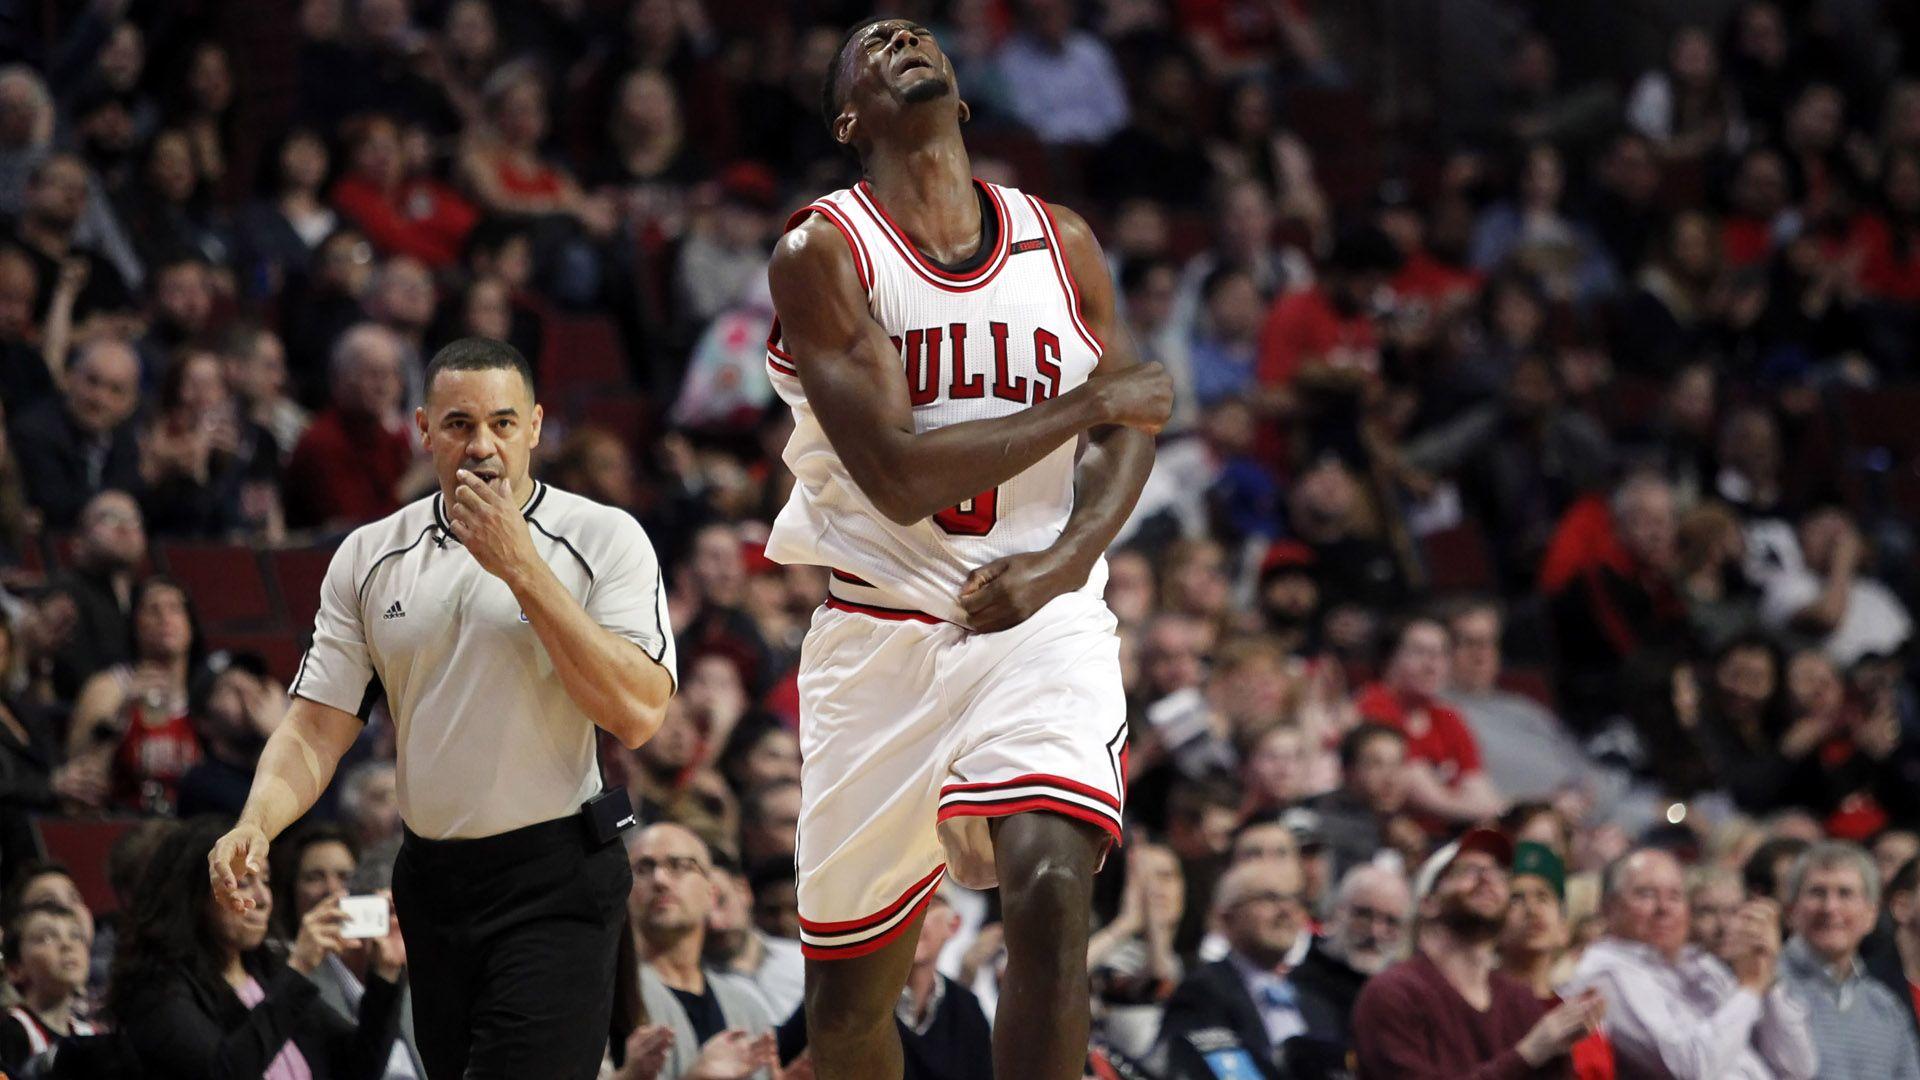 Bulls forward Bobby Portis suspended multiple games for punching